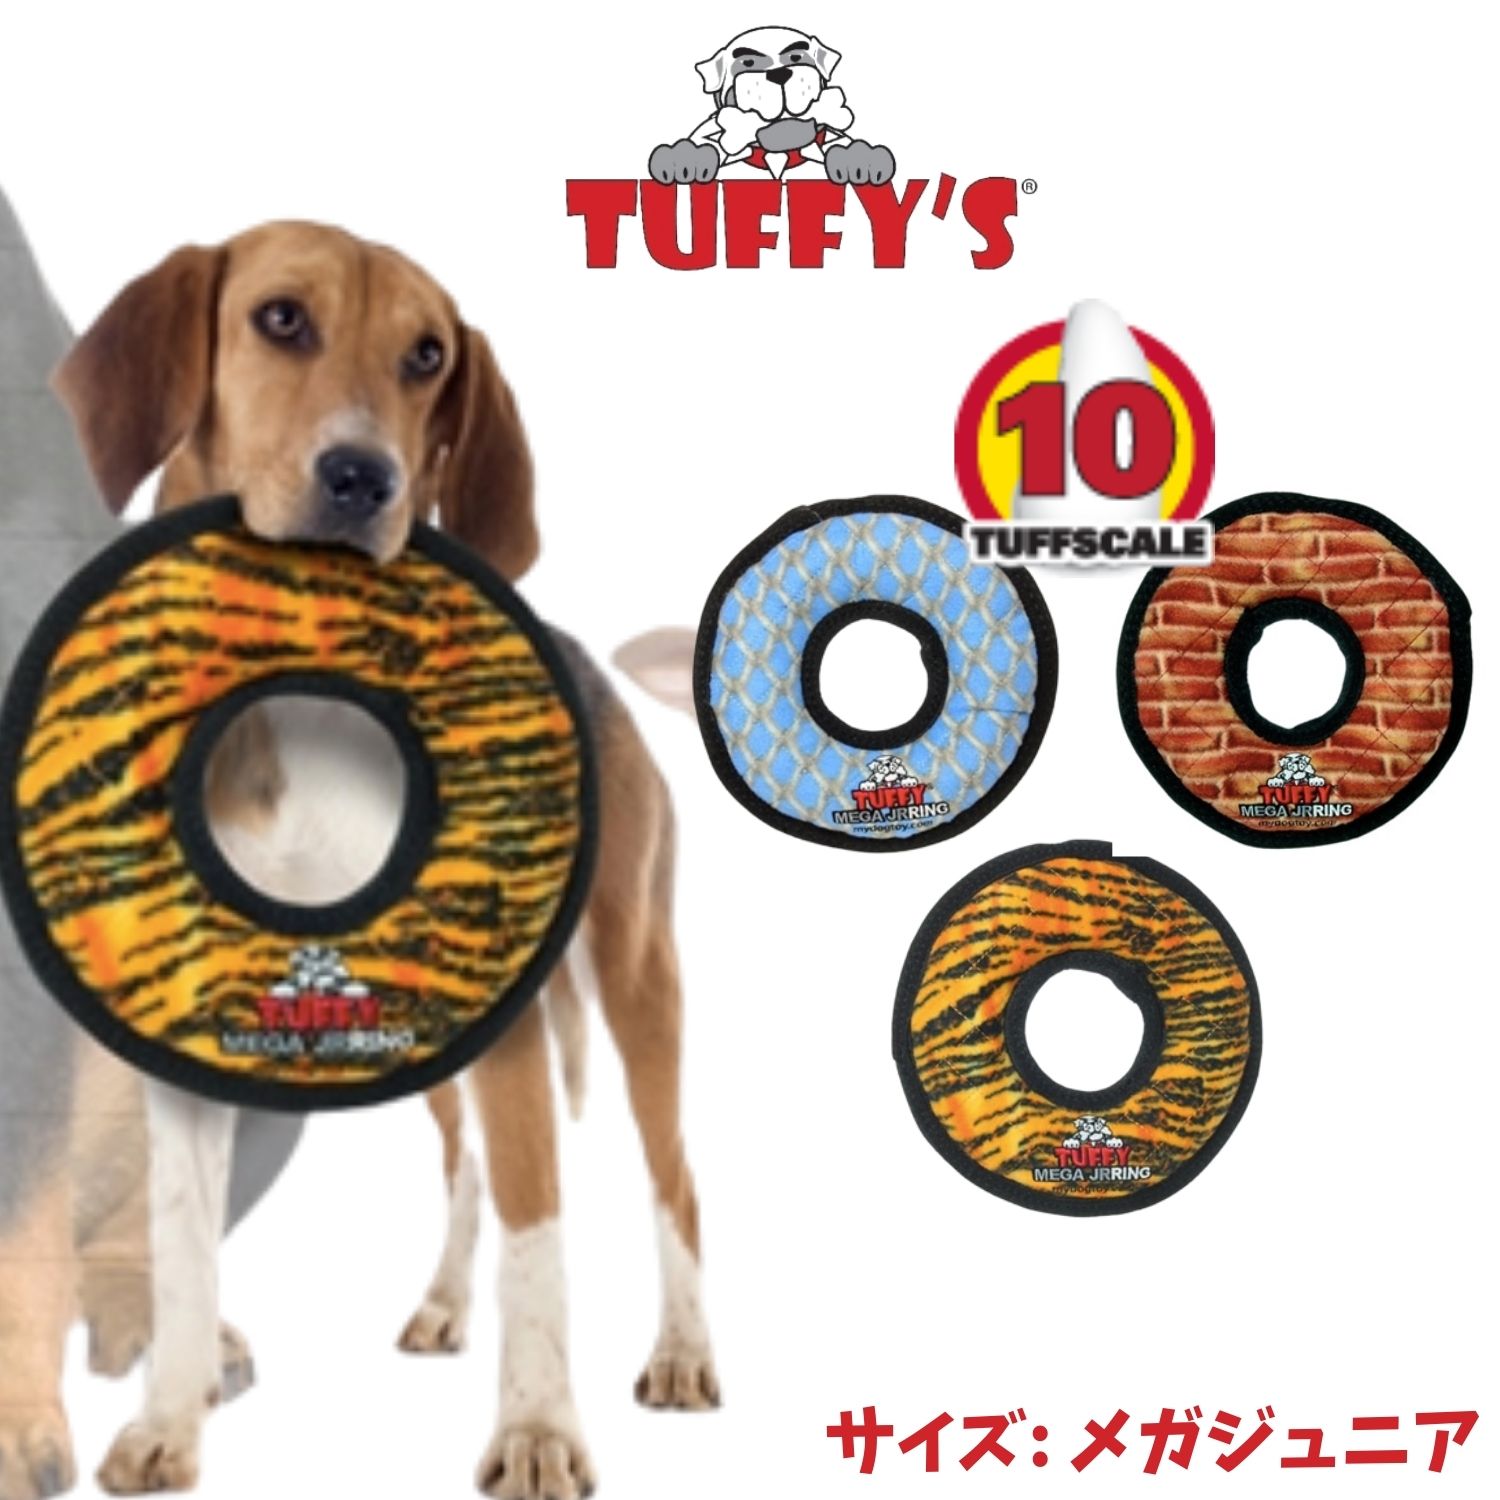 タフスケール 耐久レベル : レベル10 サイズ: 3.81cm×22.86cm×22.86cm スクイーカー: 3つ 中型犬-大型犬向き 500円-1000円offクーポンあり メガジュニアリング 犬用 おもちゃ 音が鳴る Tuffys 送料無料 NEW ARRIVAL オレンジ 犬のおもちゃ ブラウン 頑丈 耐久度10 ブルー 丈夫で長持ち Tuffy's 捧呈 ぬいぐるみ タフィーズ